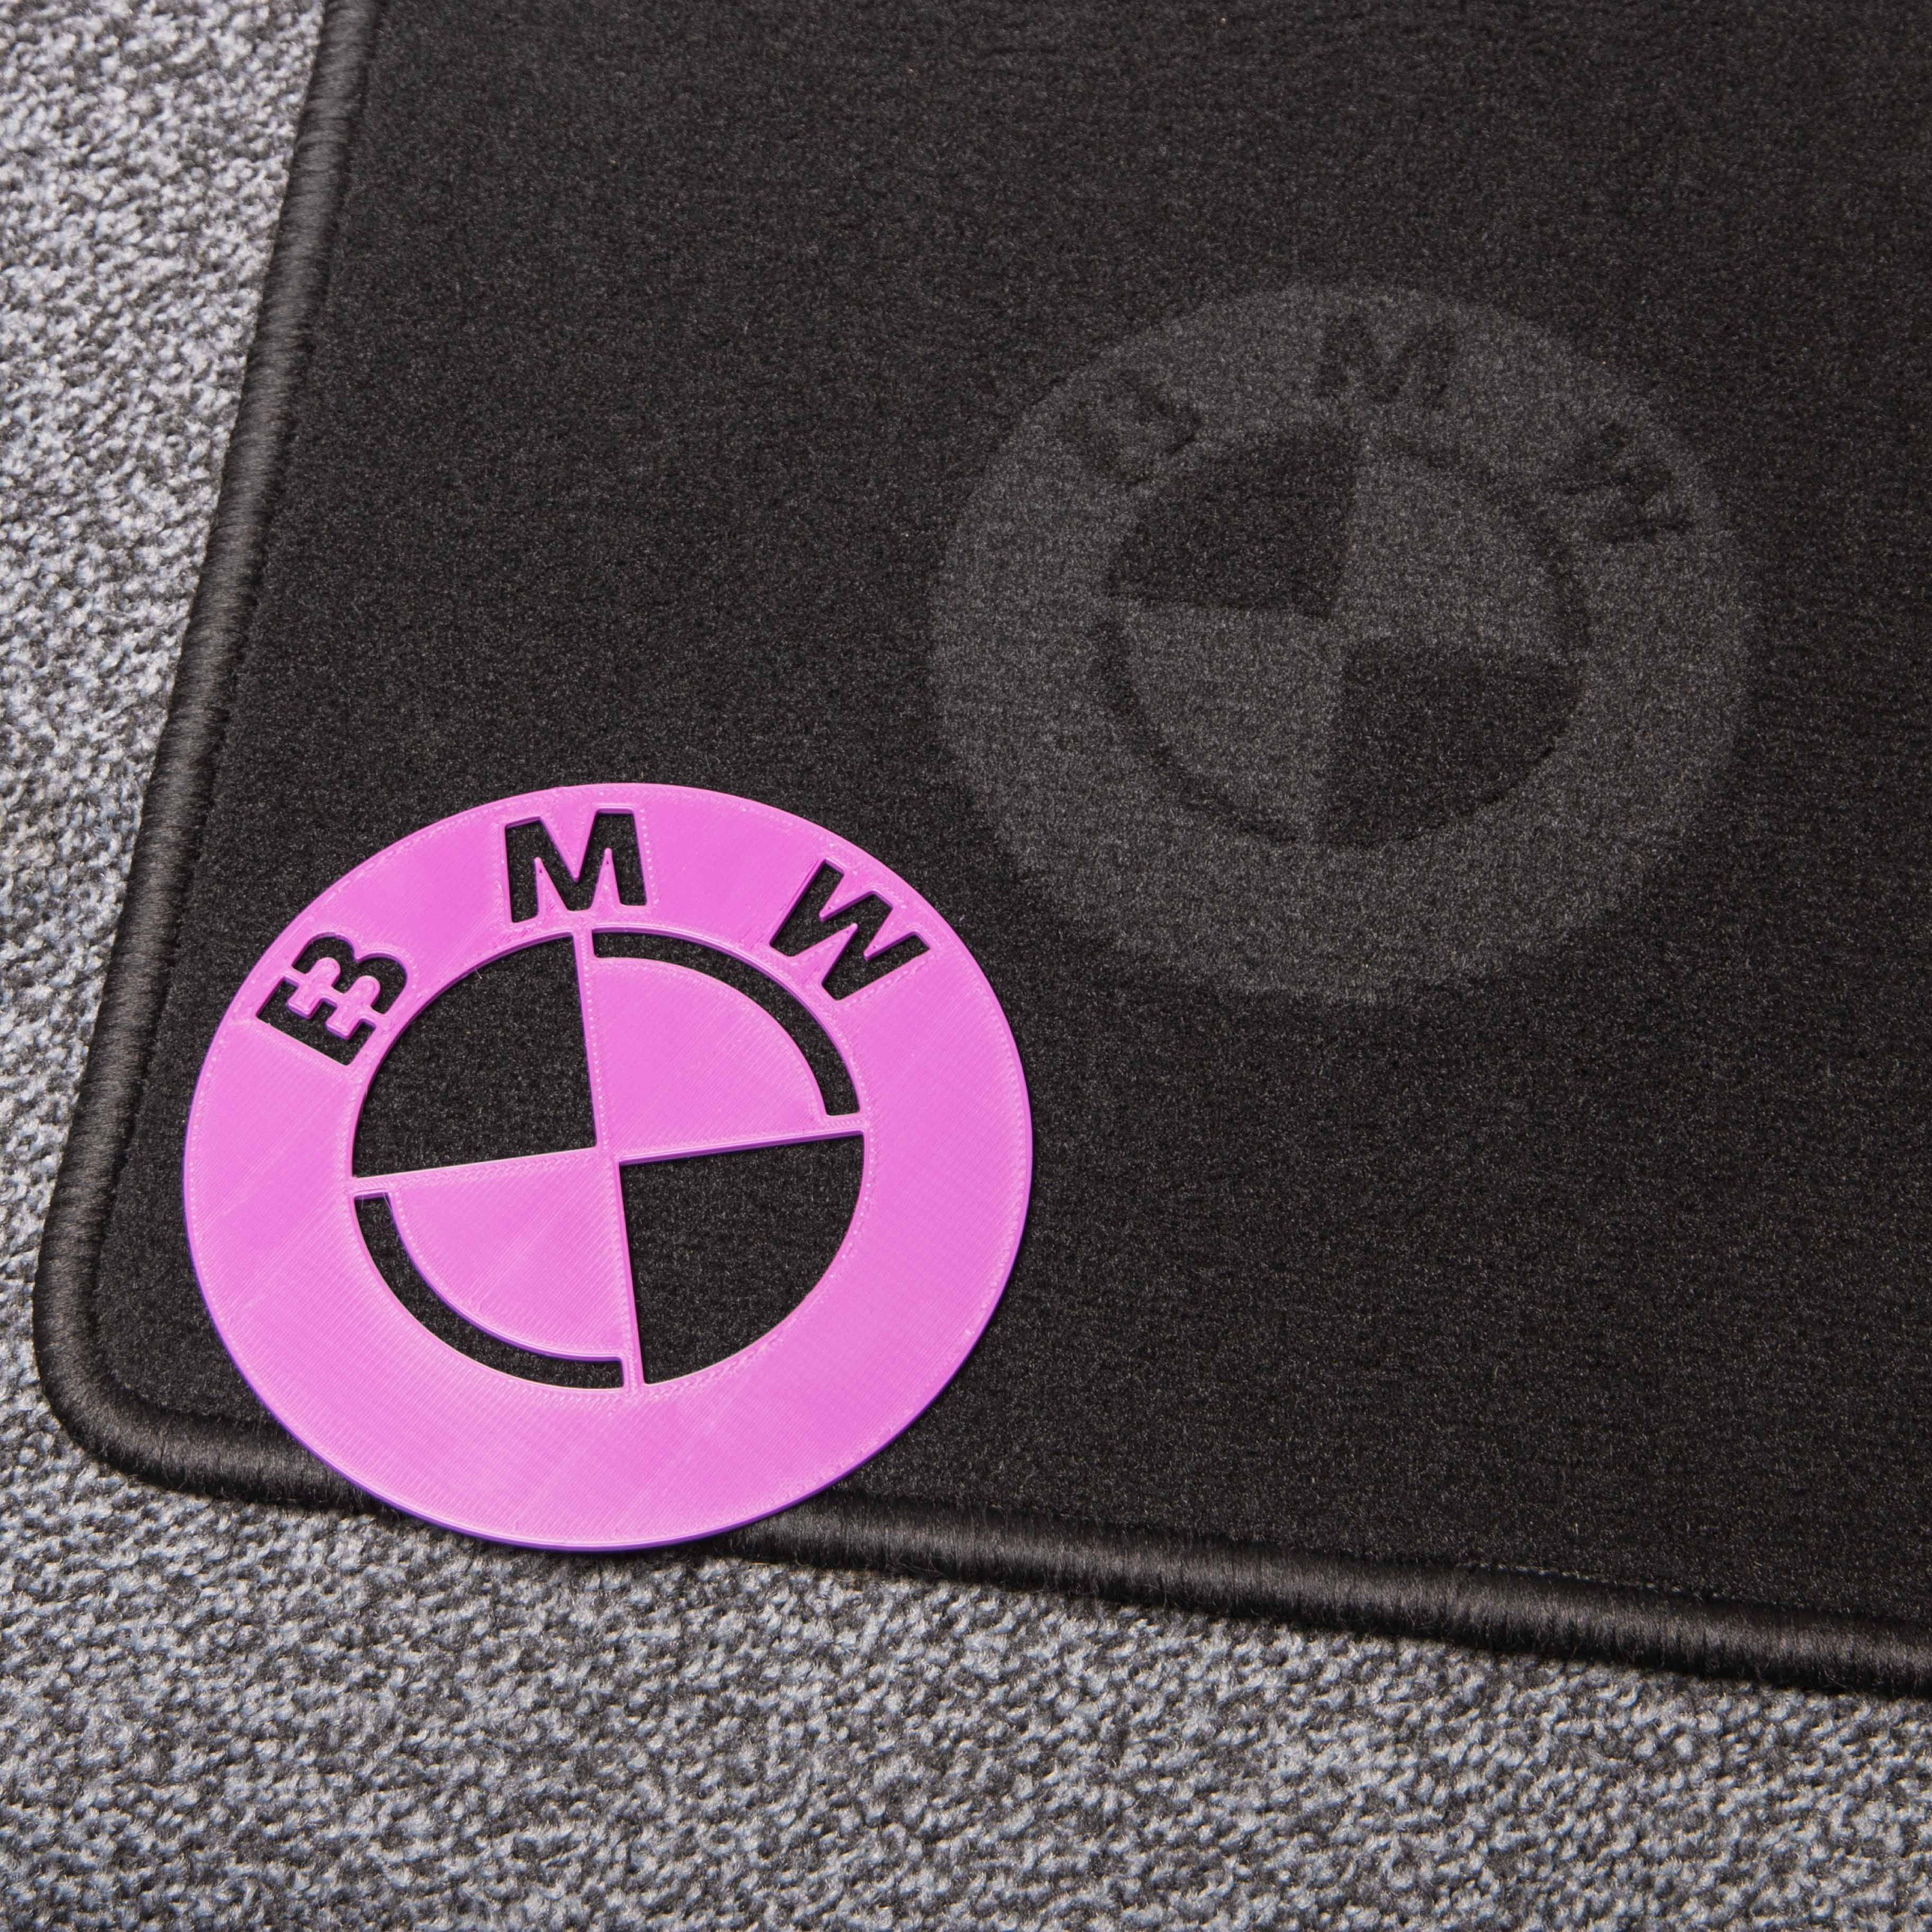  DIVONU Rennwagen B-M-W Logo Bedruckt Flanellteppich Schöne  rutschfeste Fußmatten Mode Yogamatte Teppich Geburtstagsgeschenk B1979  120×160CM